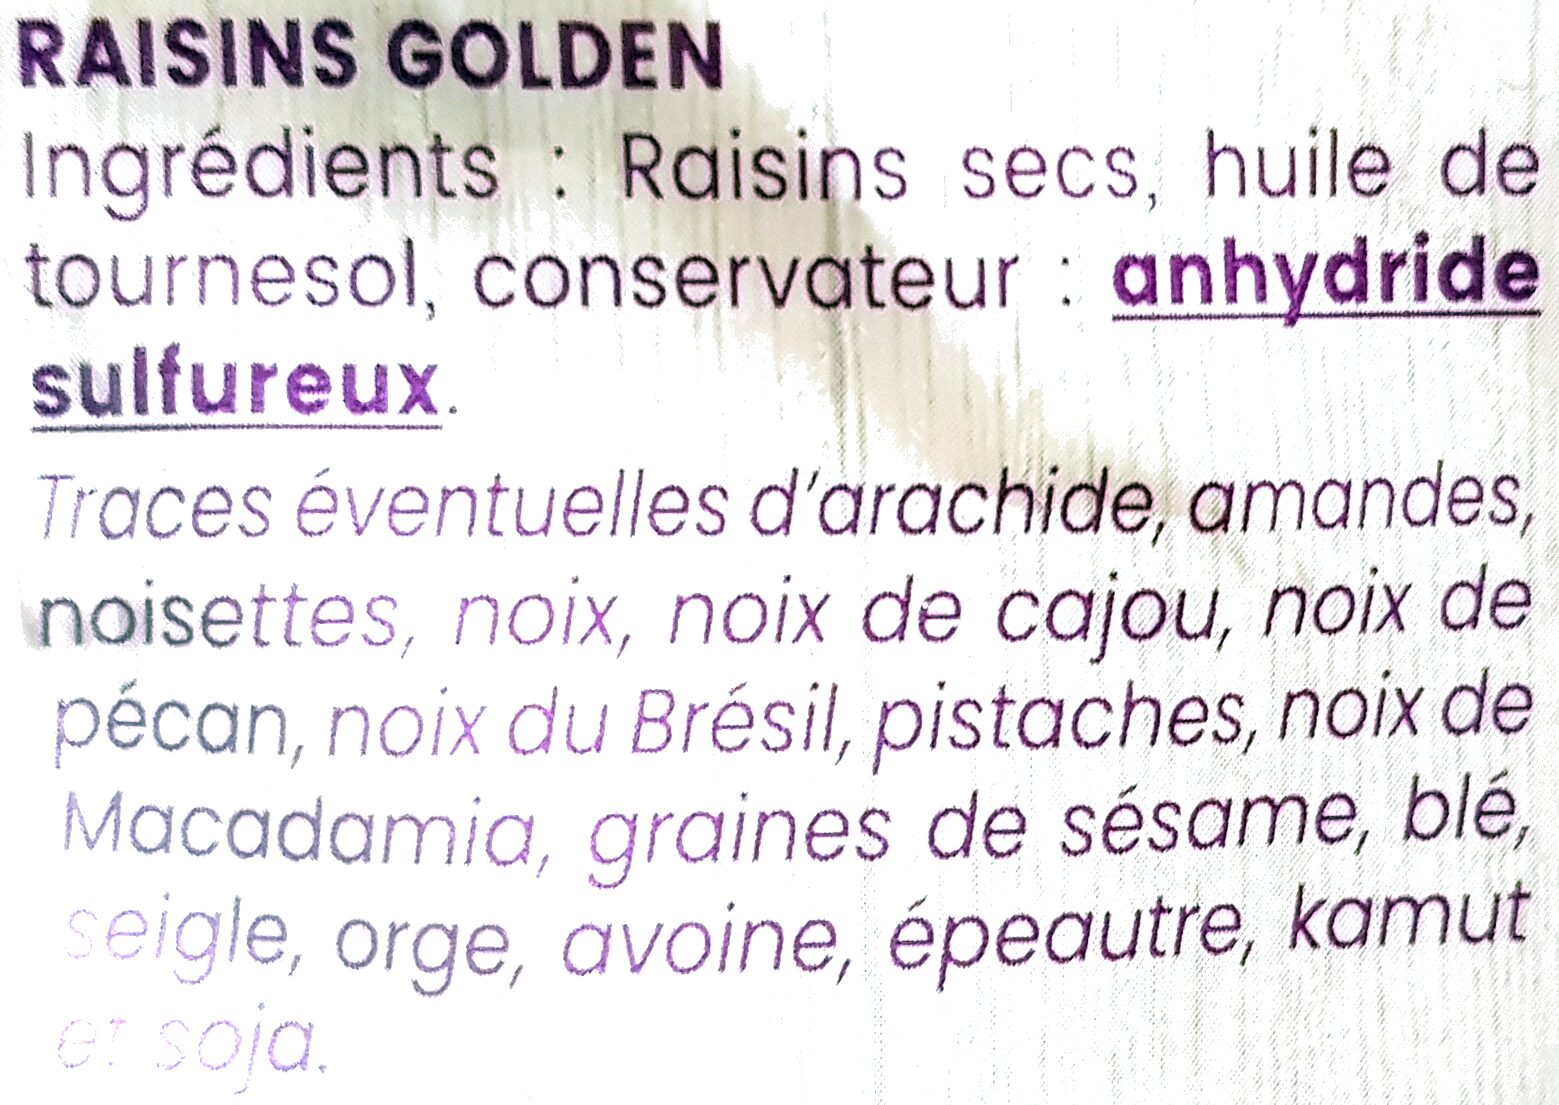 raisin sec golden - Ingredients - fr